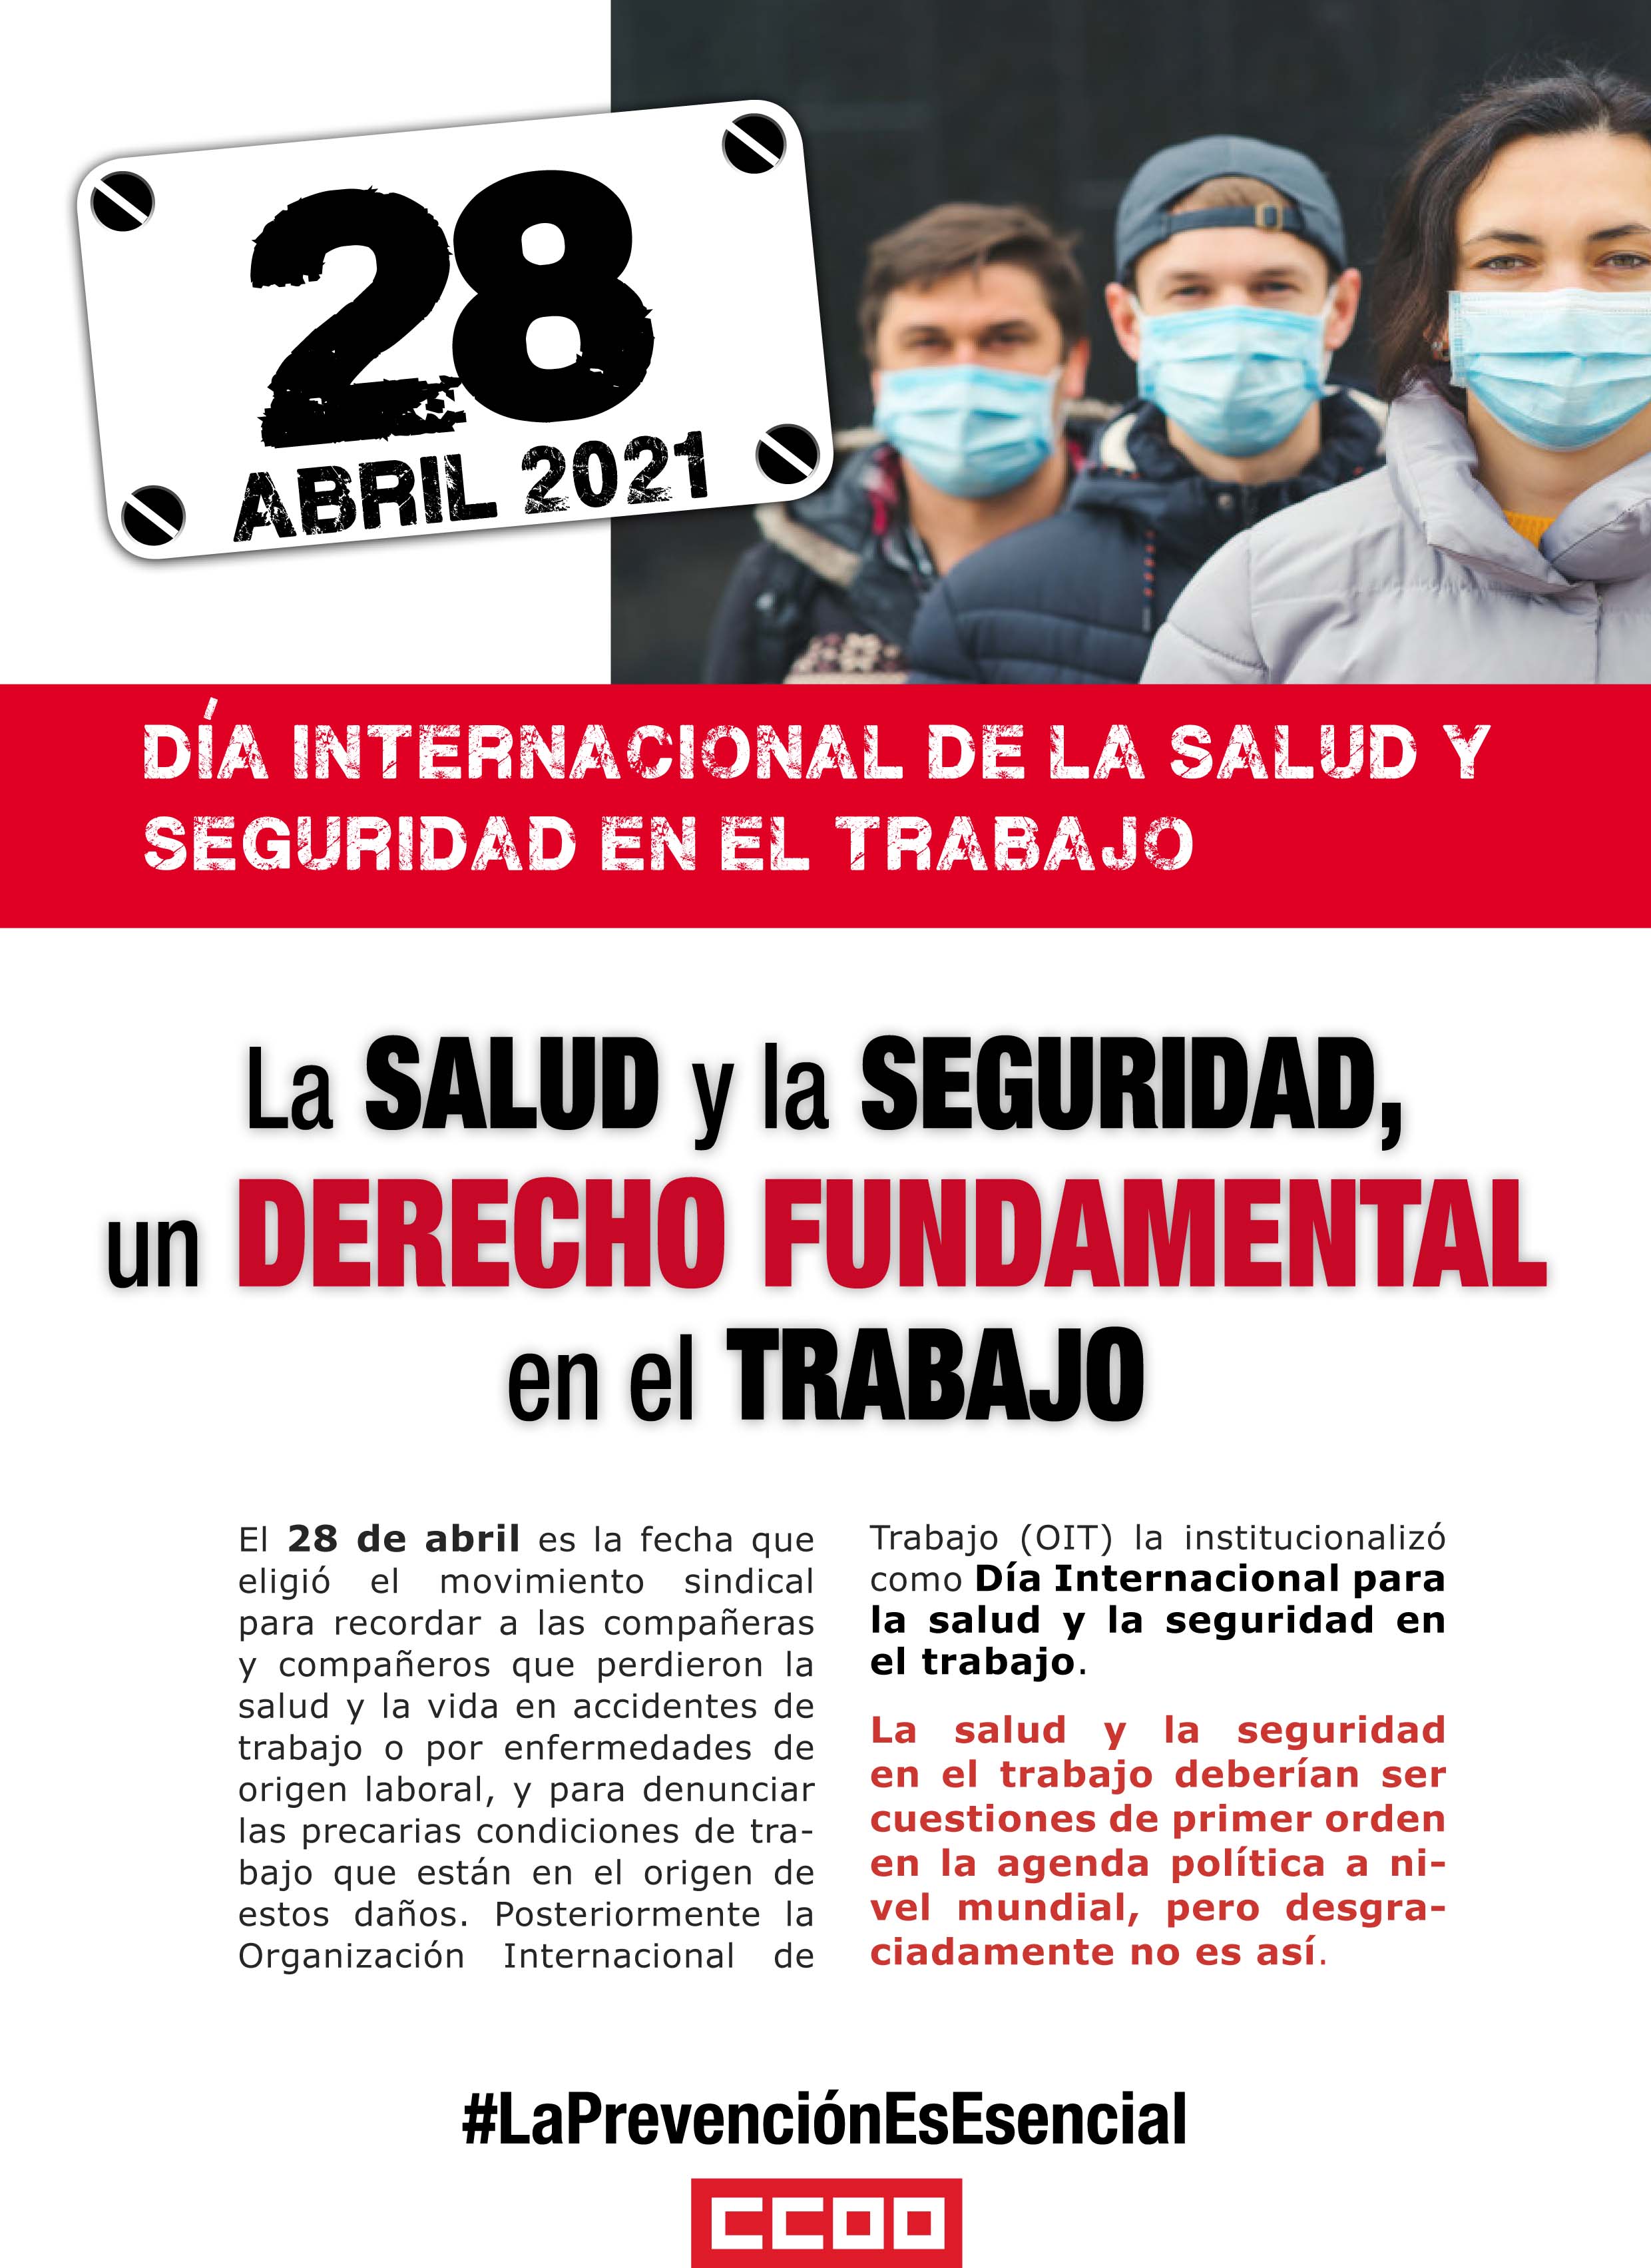 28 de abril, la salud y la seguridad, un derecho fundamental en el trabajo